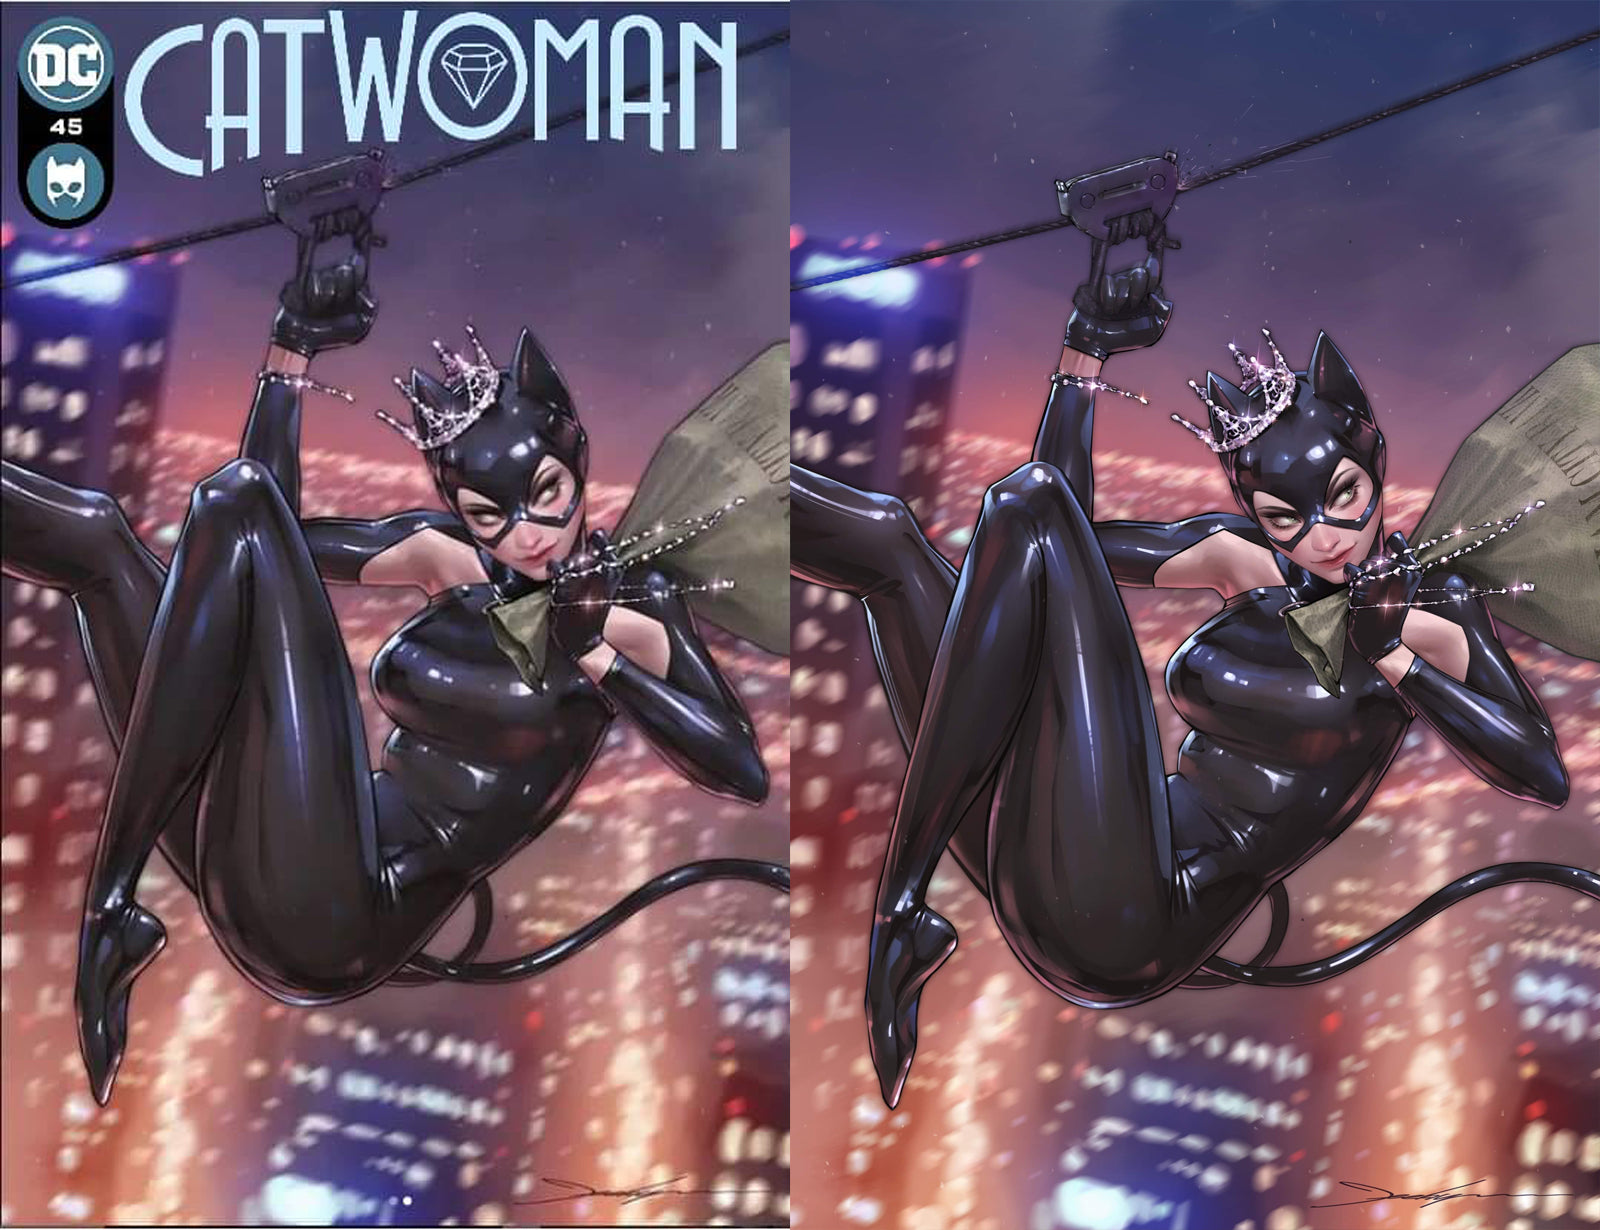 Catwoman 45 Jeehyung Lee Batman Harley Quinn Superman Virgin Variant DC Comics Marvel Comics X-Men Batman Joker East Side Comics Virgin Exclusive cgc signed ss comics